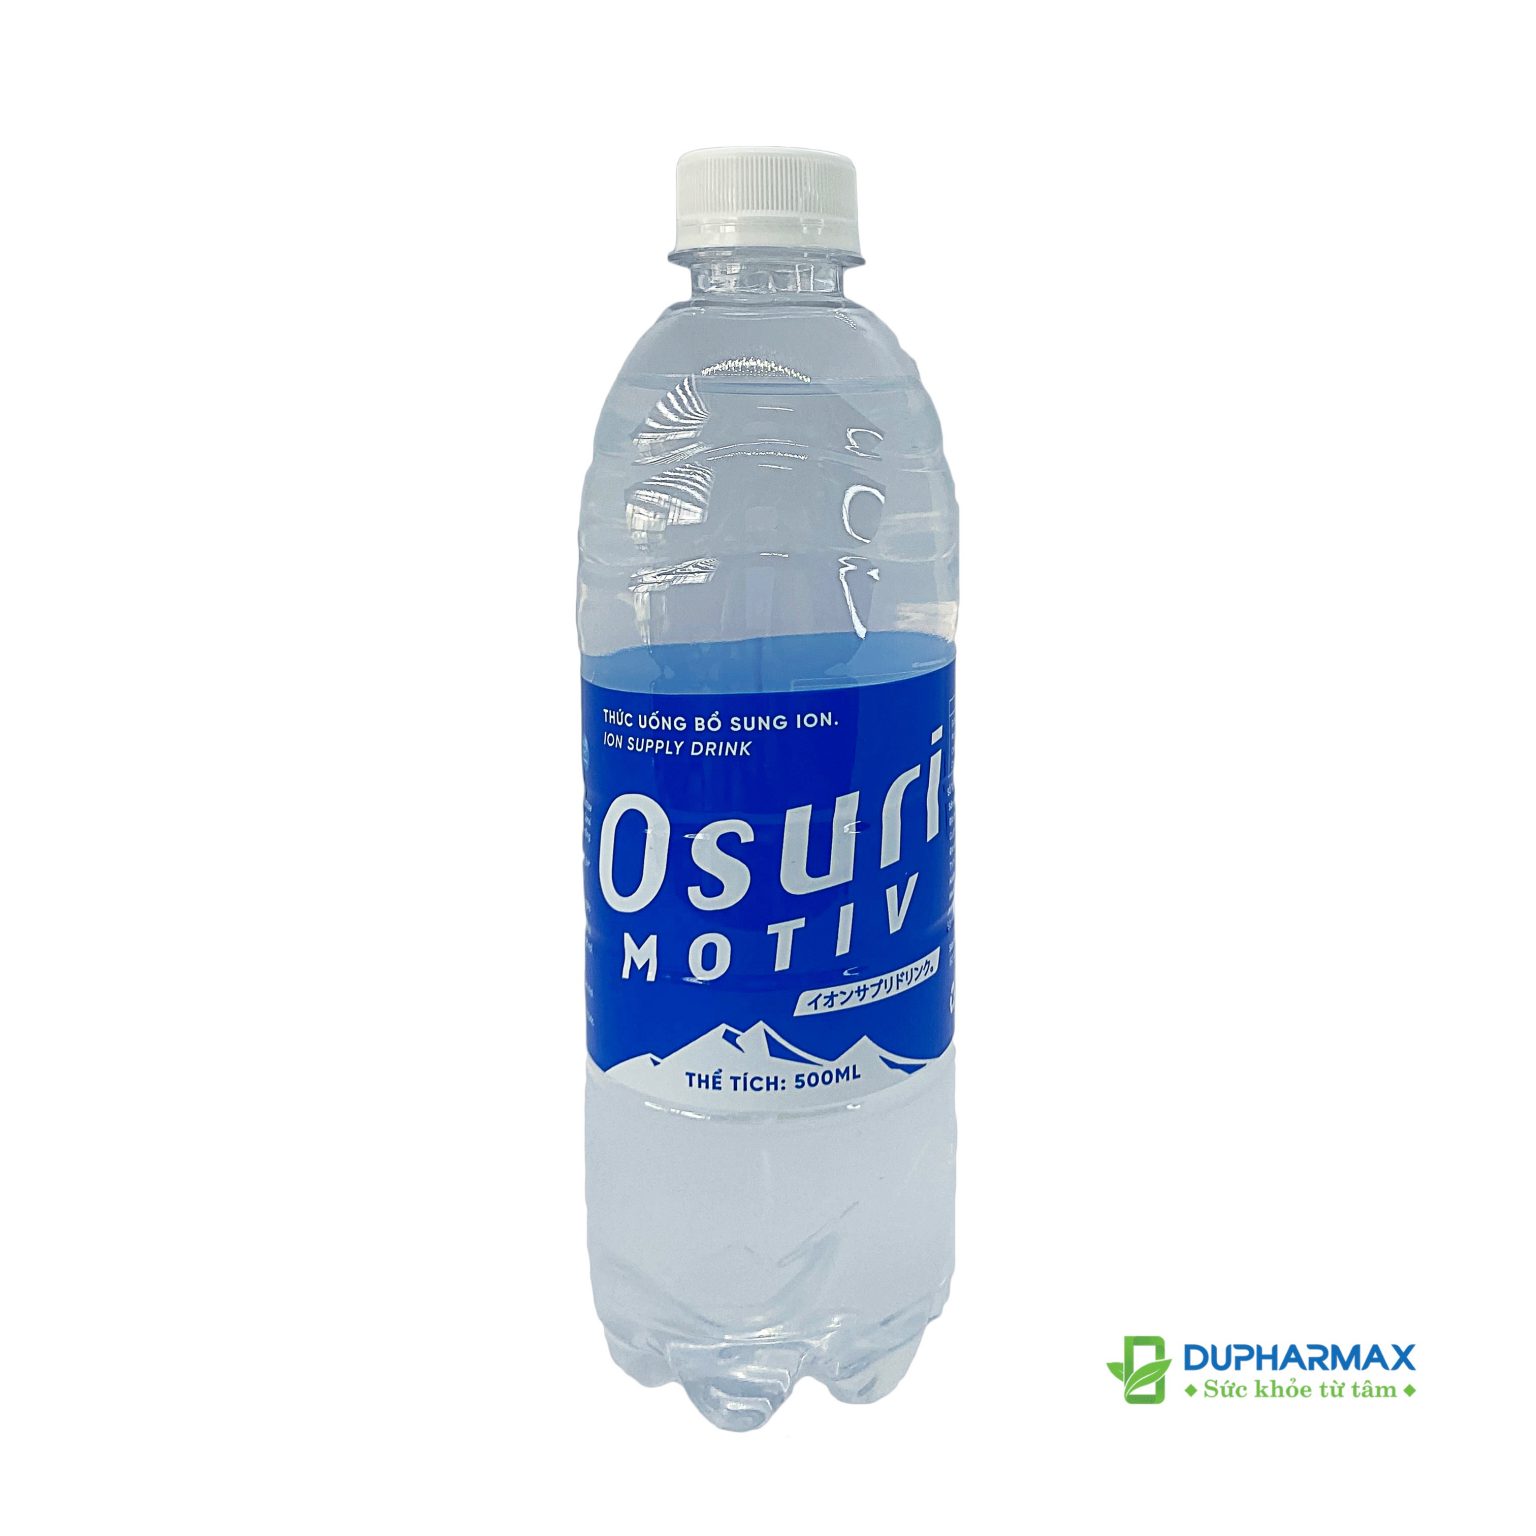 Nước uống vận động Osuri của Dupharmax